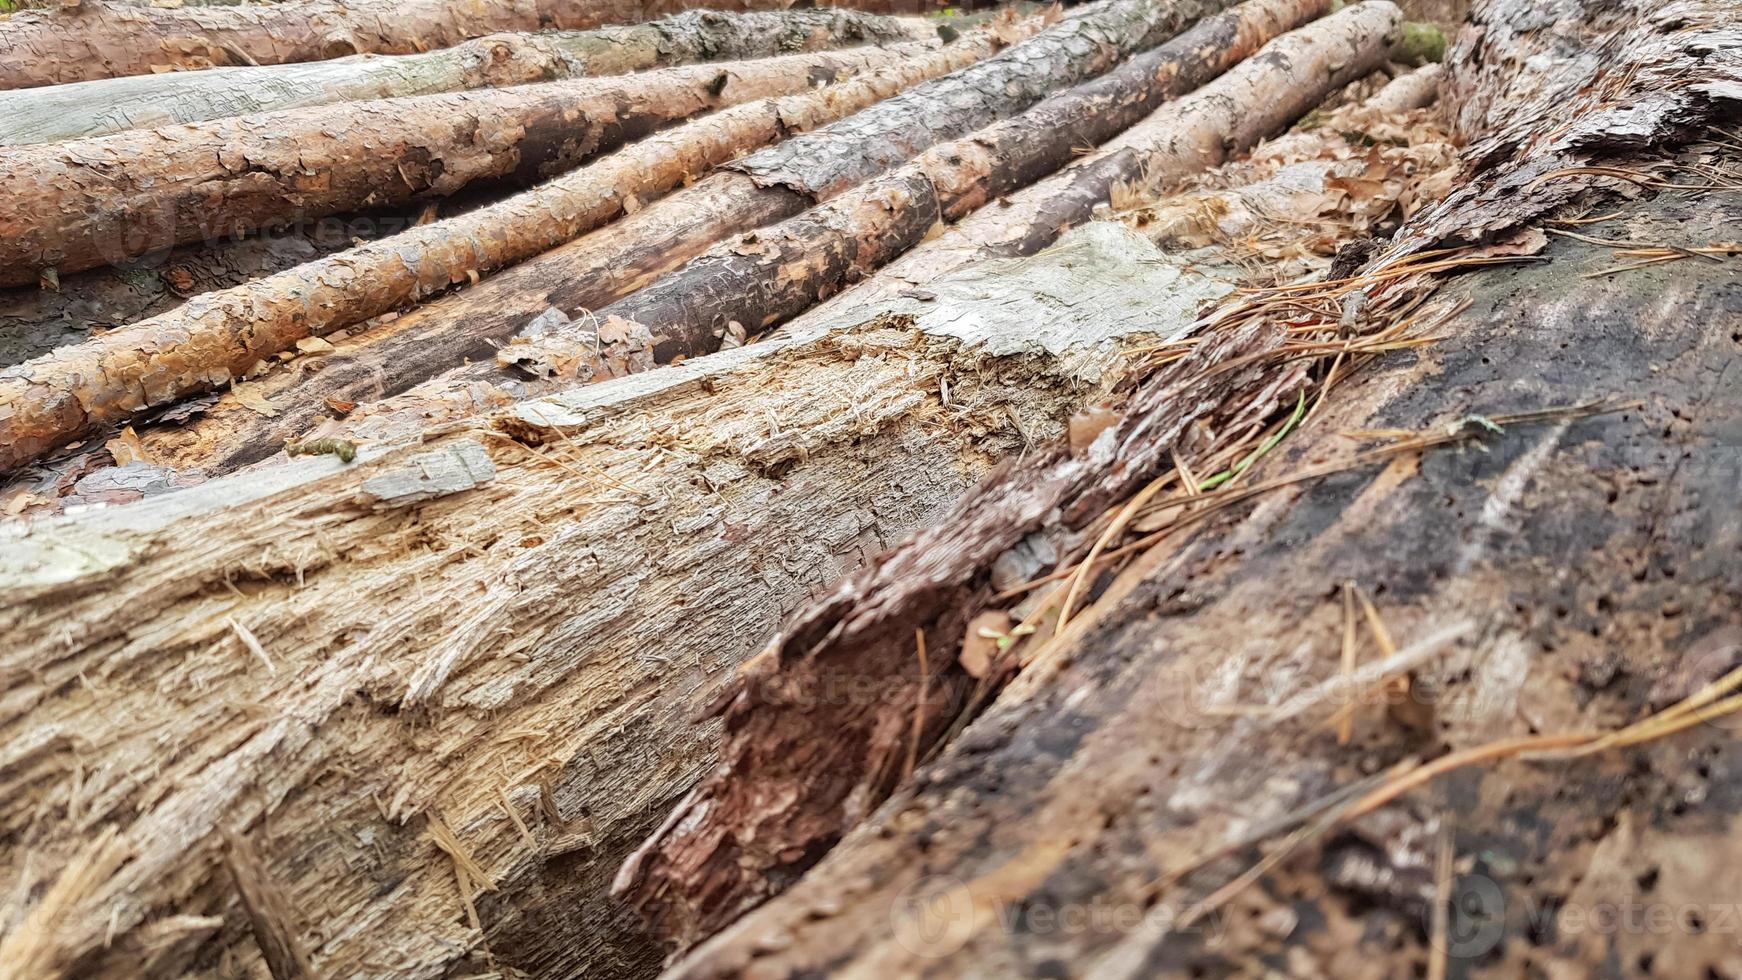 nysågade stockar. stockar av träd i skogen efter avverkning foto